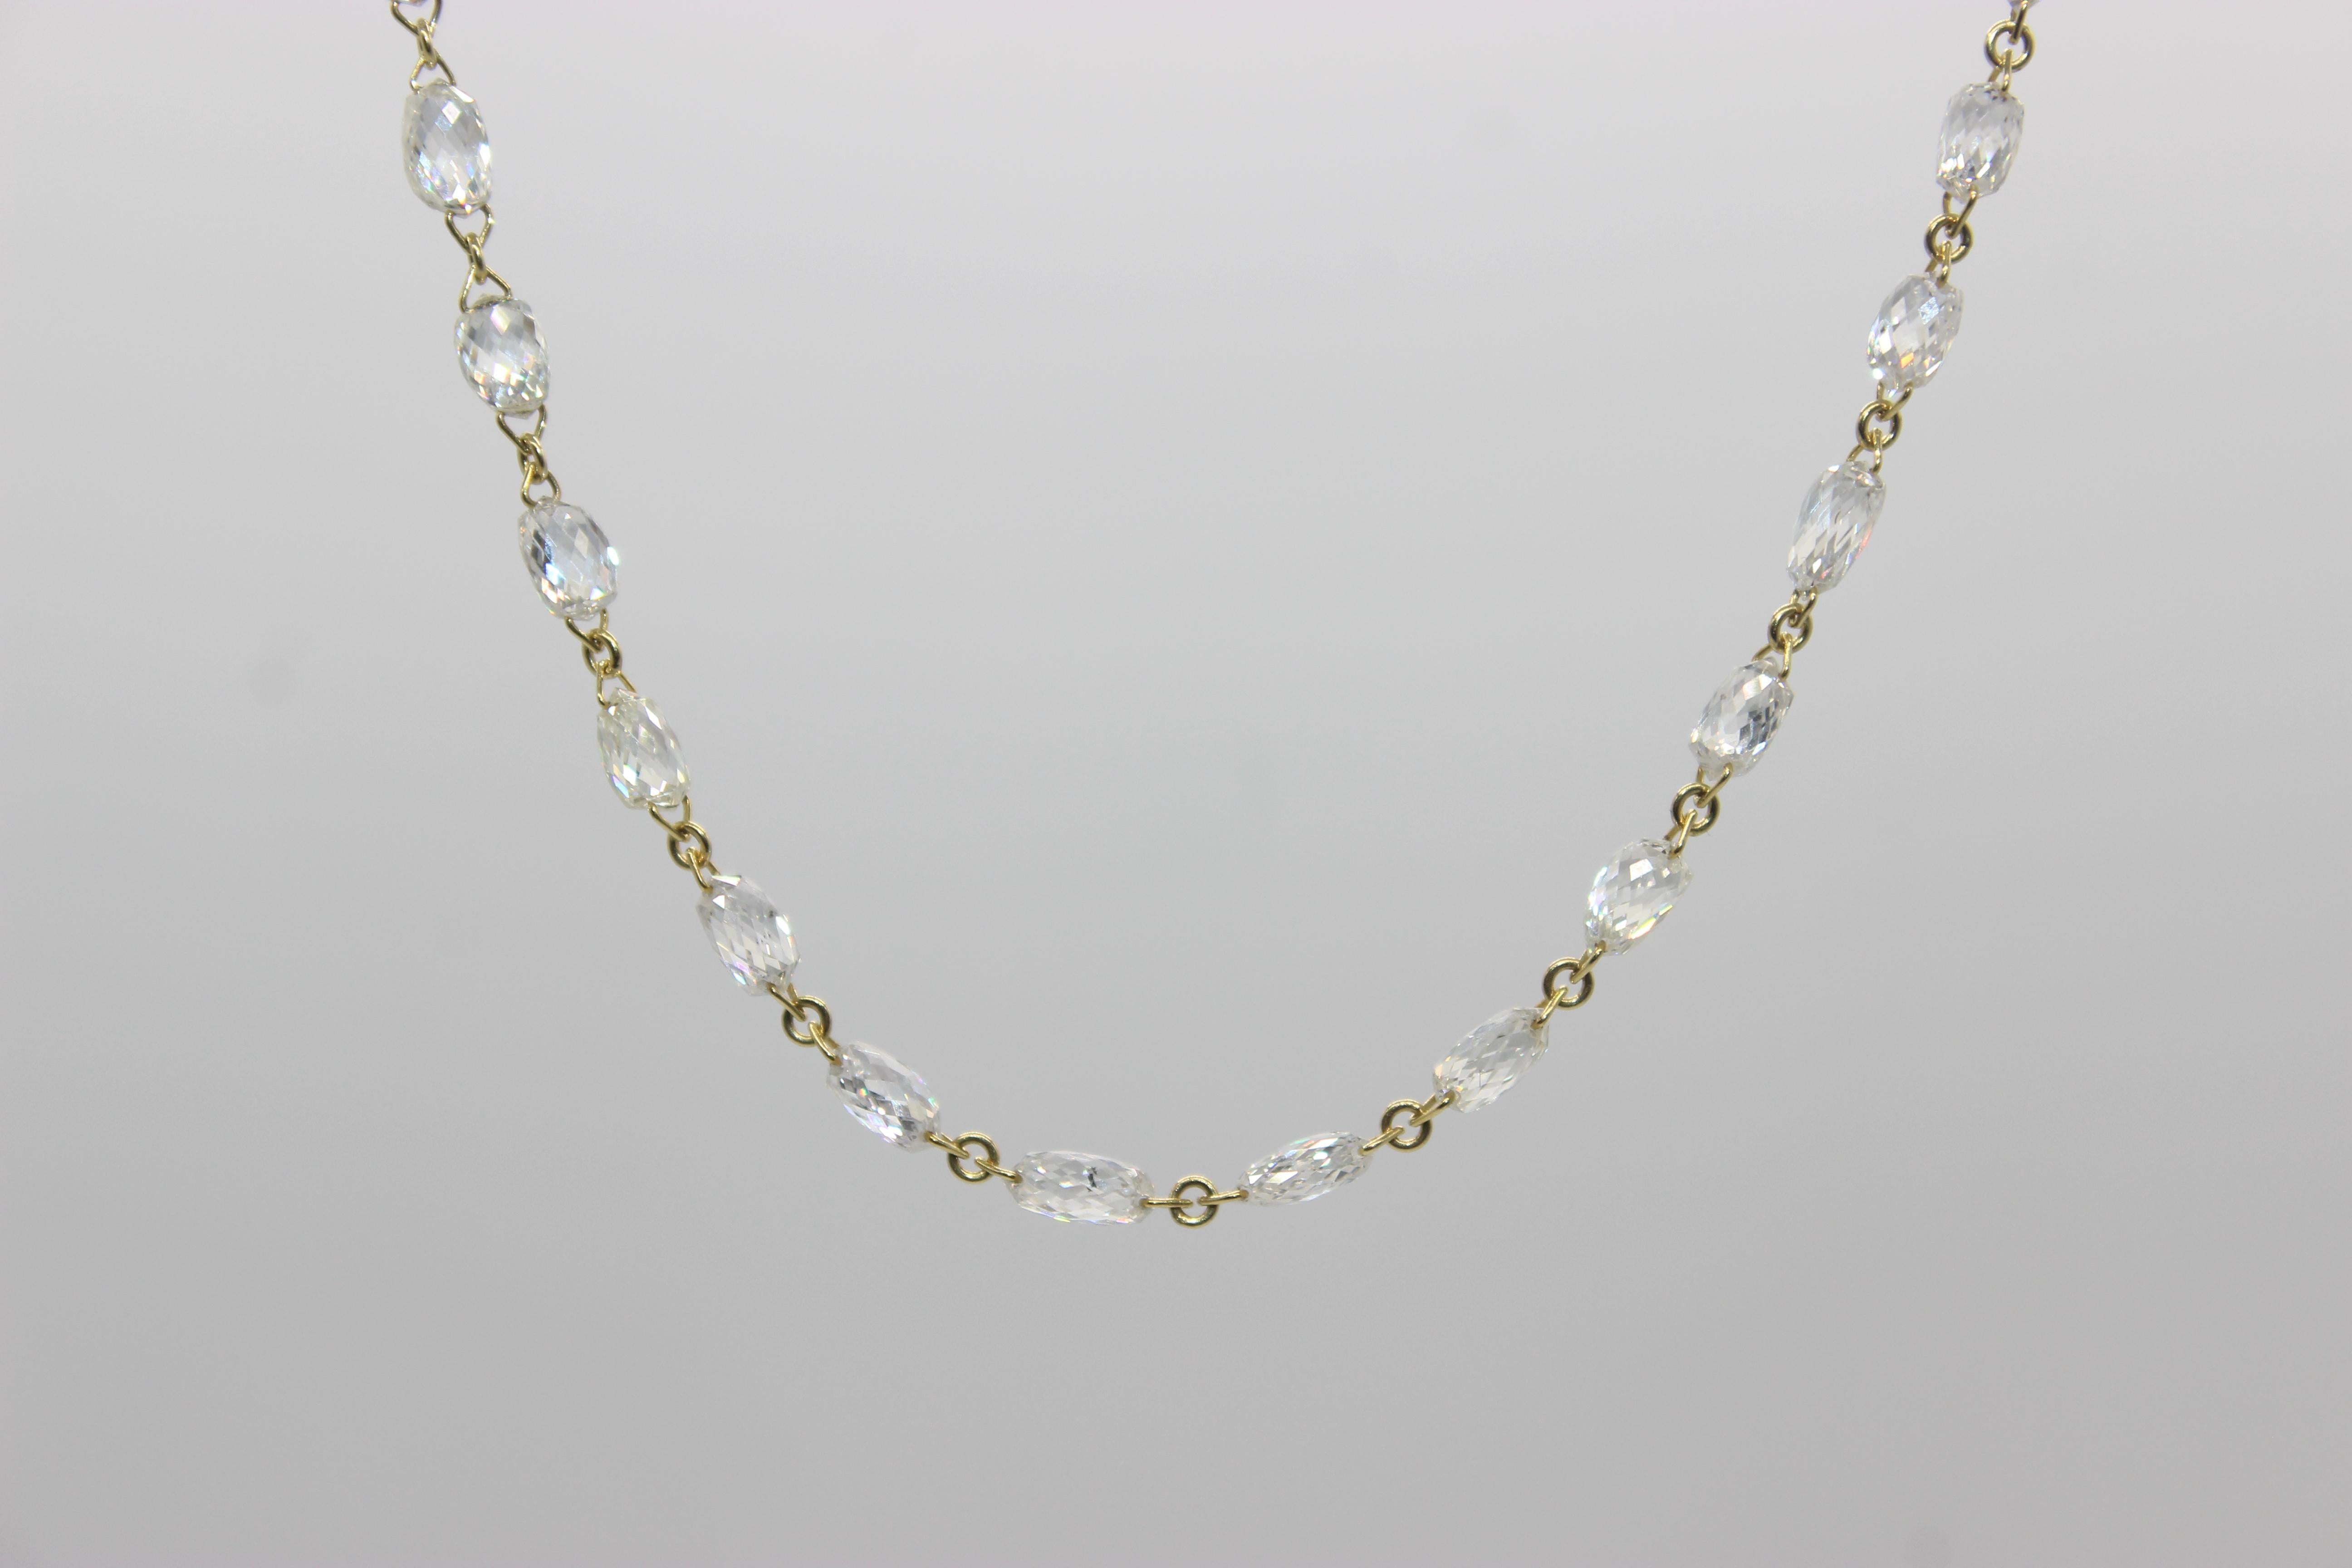 PANIM Collier ras du cou en or jaune 18 carats avec briolette de diamants de 6,79 carats

Un collier ras de cou à briolettes en diamant est un bijou intemporel qui ajoute une touche d'élégance et de sophistication à n'importe quelle tenue. Ce